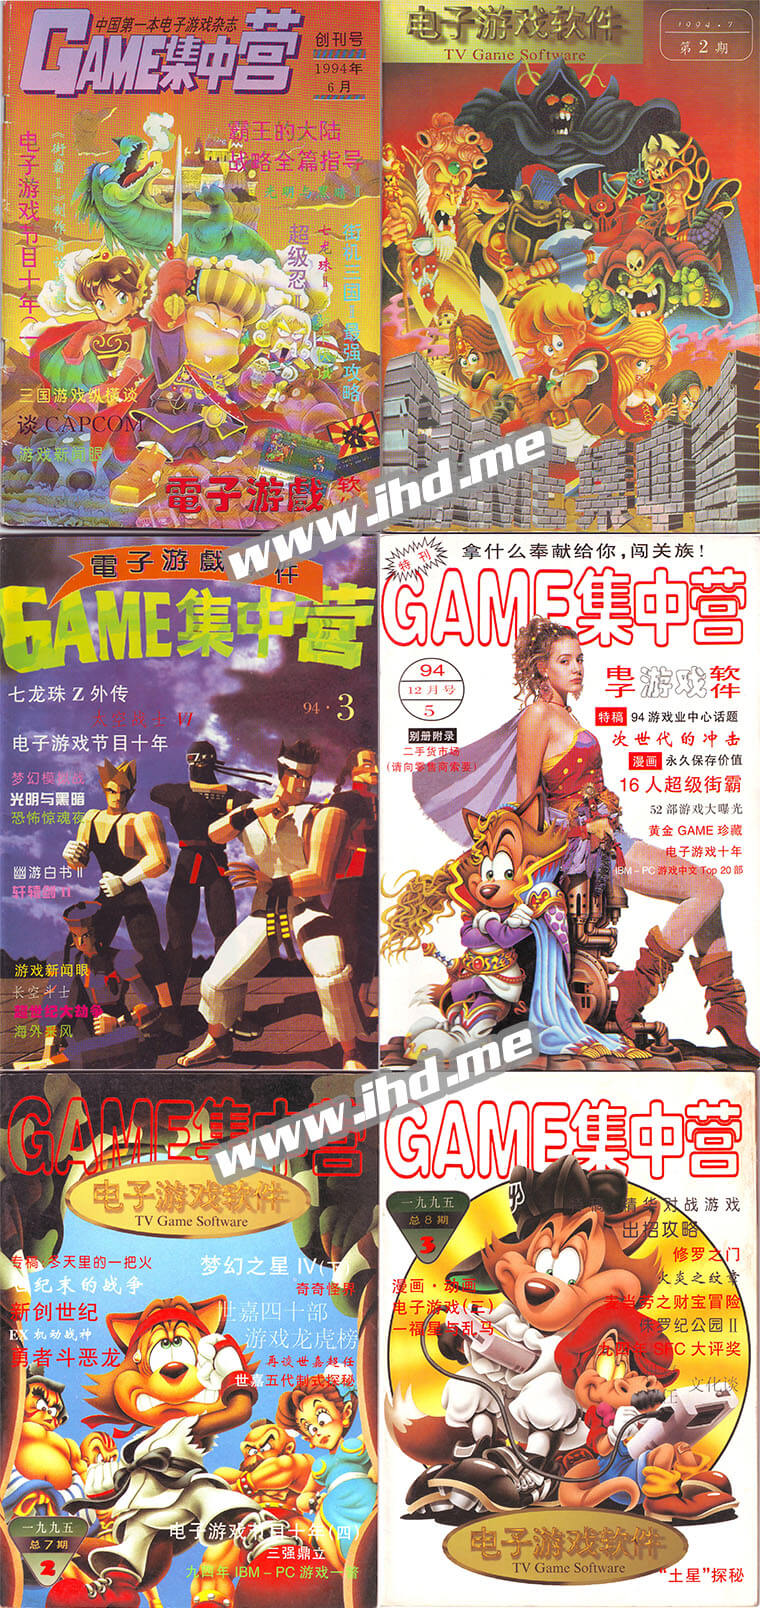 《电子游戏软件》全套电子版及合订本 又名《GAME集中营》《GAME风景线》 介绍图片